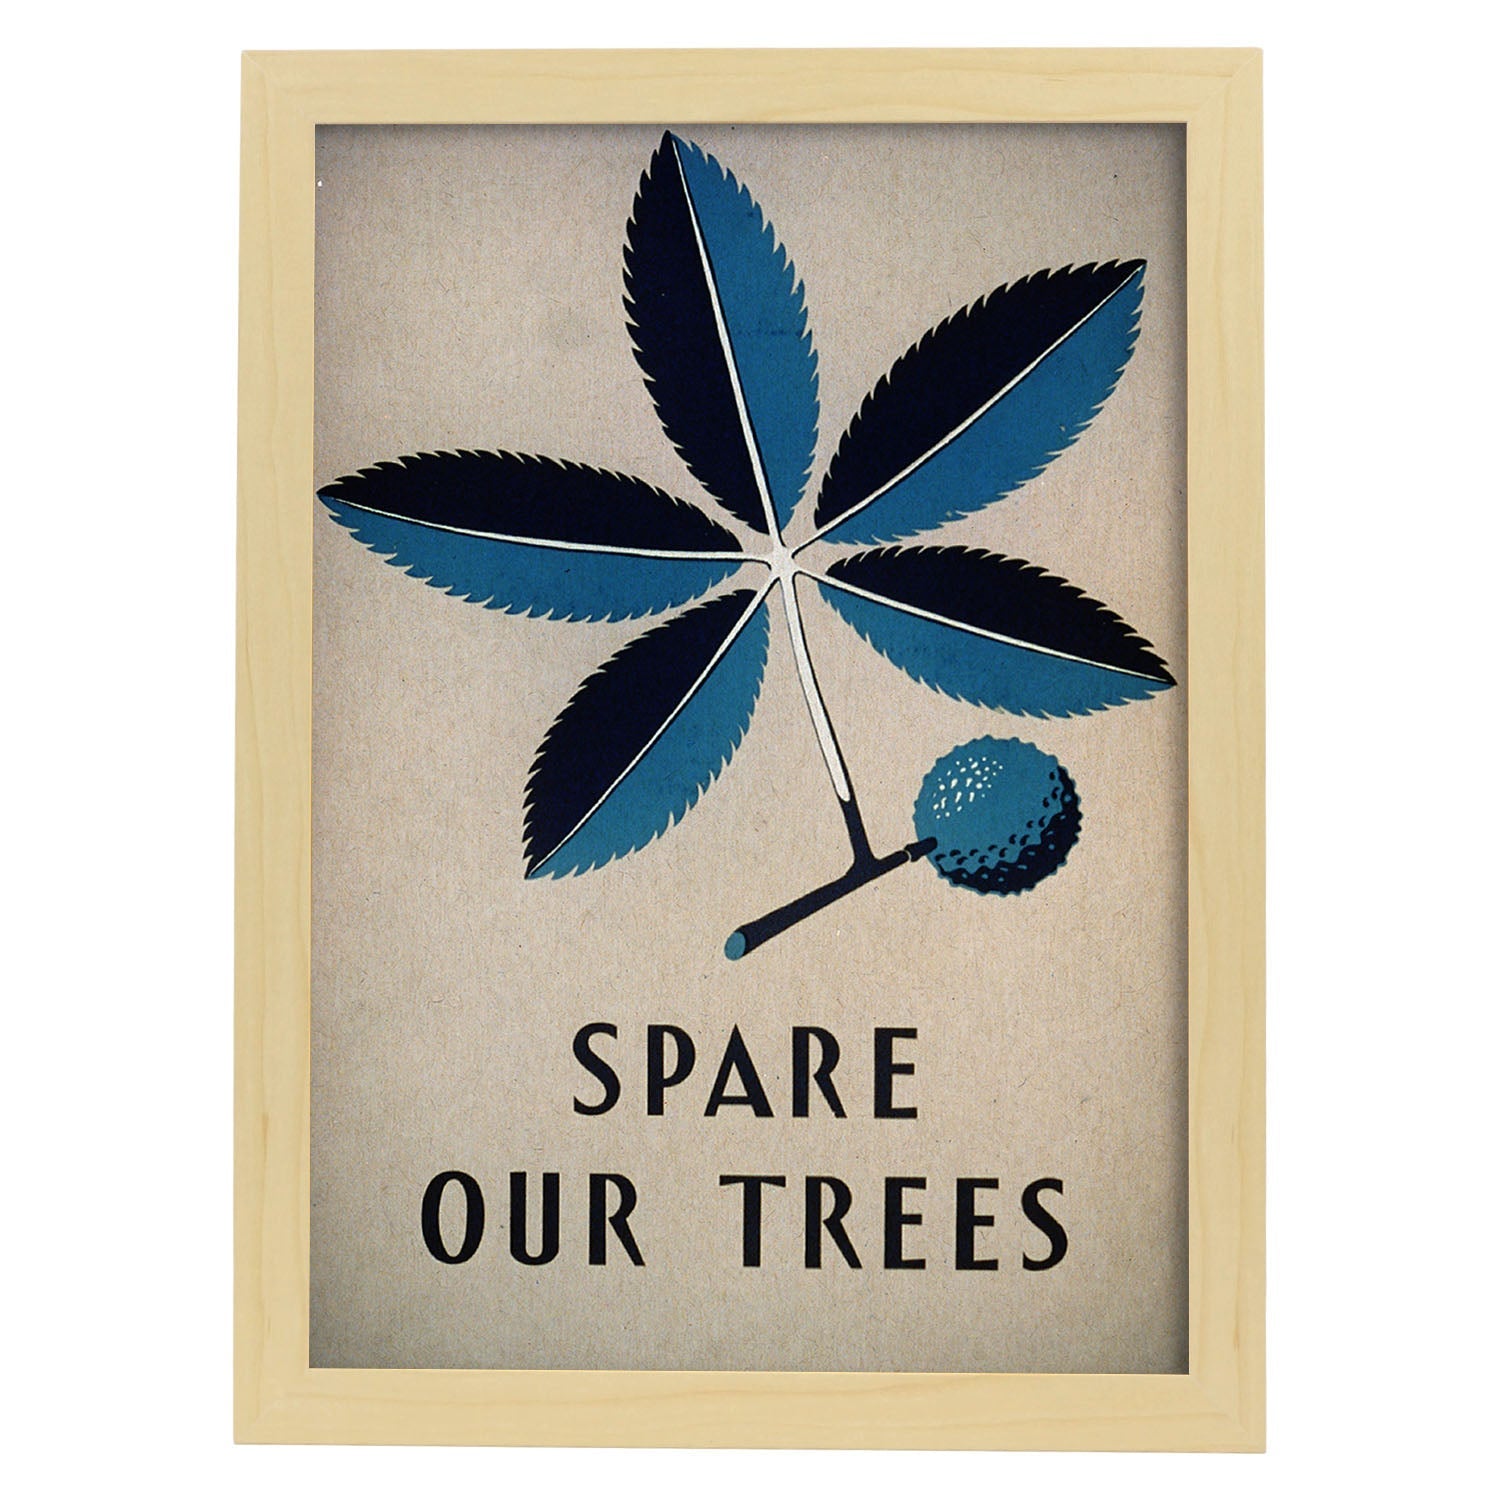 Poster vintage. Cartel vintage Spare our trees Ohio de 1938.-Artwork-Nacnic-A3-Marco Madera clara-Nacnic Estudio SL